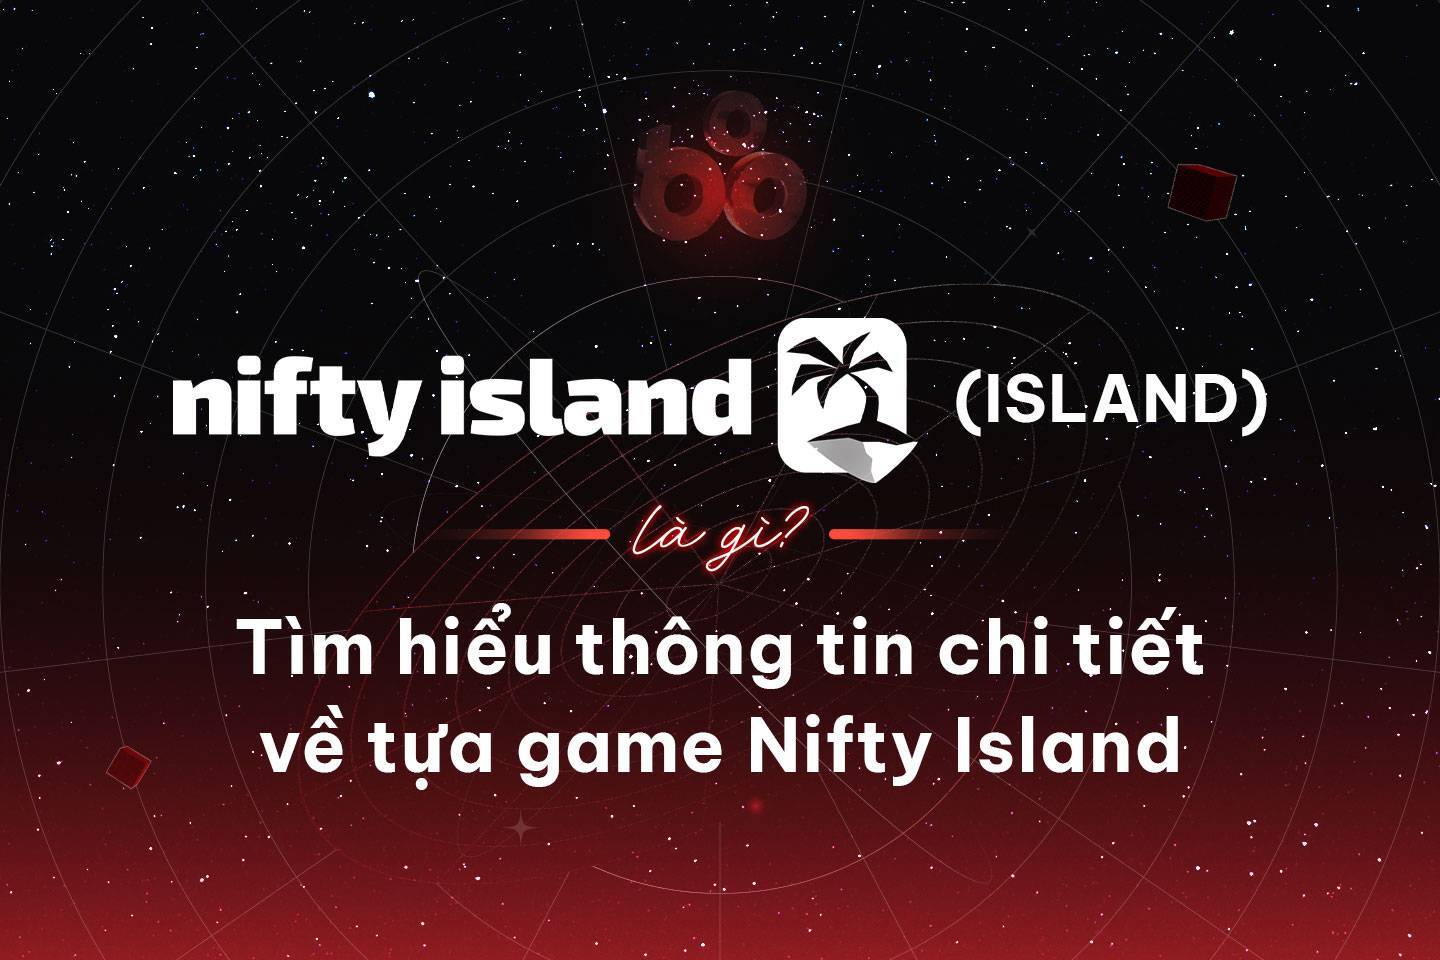 Nifty Island island Là Gì Tìm Hiểu Thông Tin Chi Tiết Về Tựa Game Nifty Island